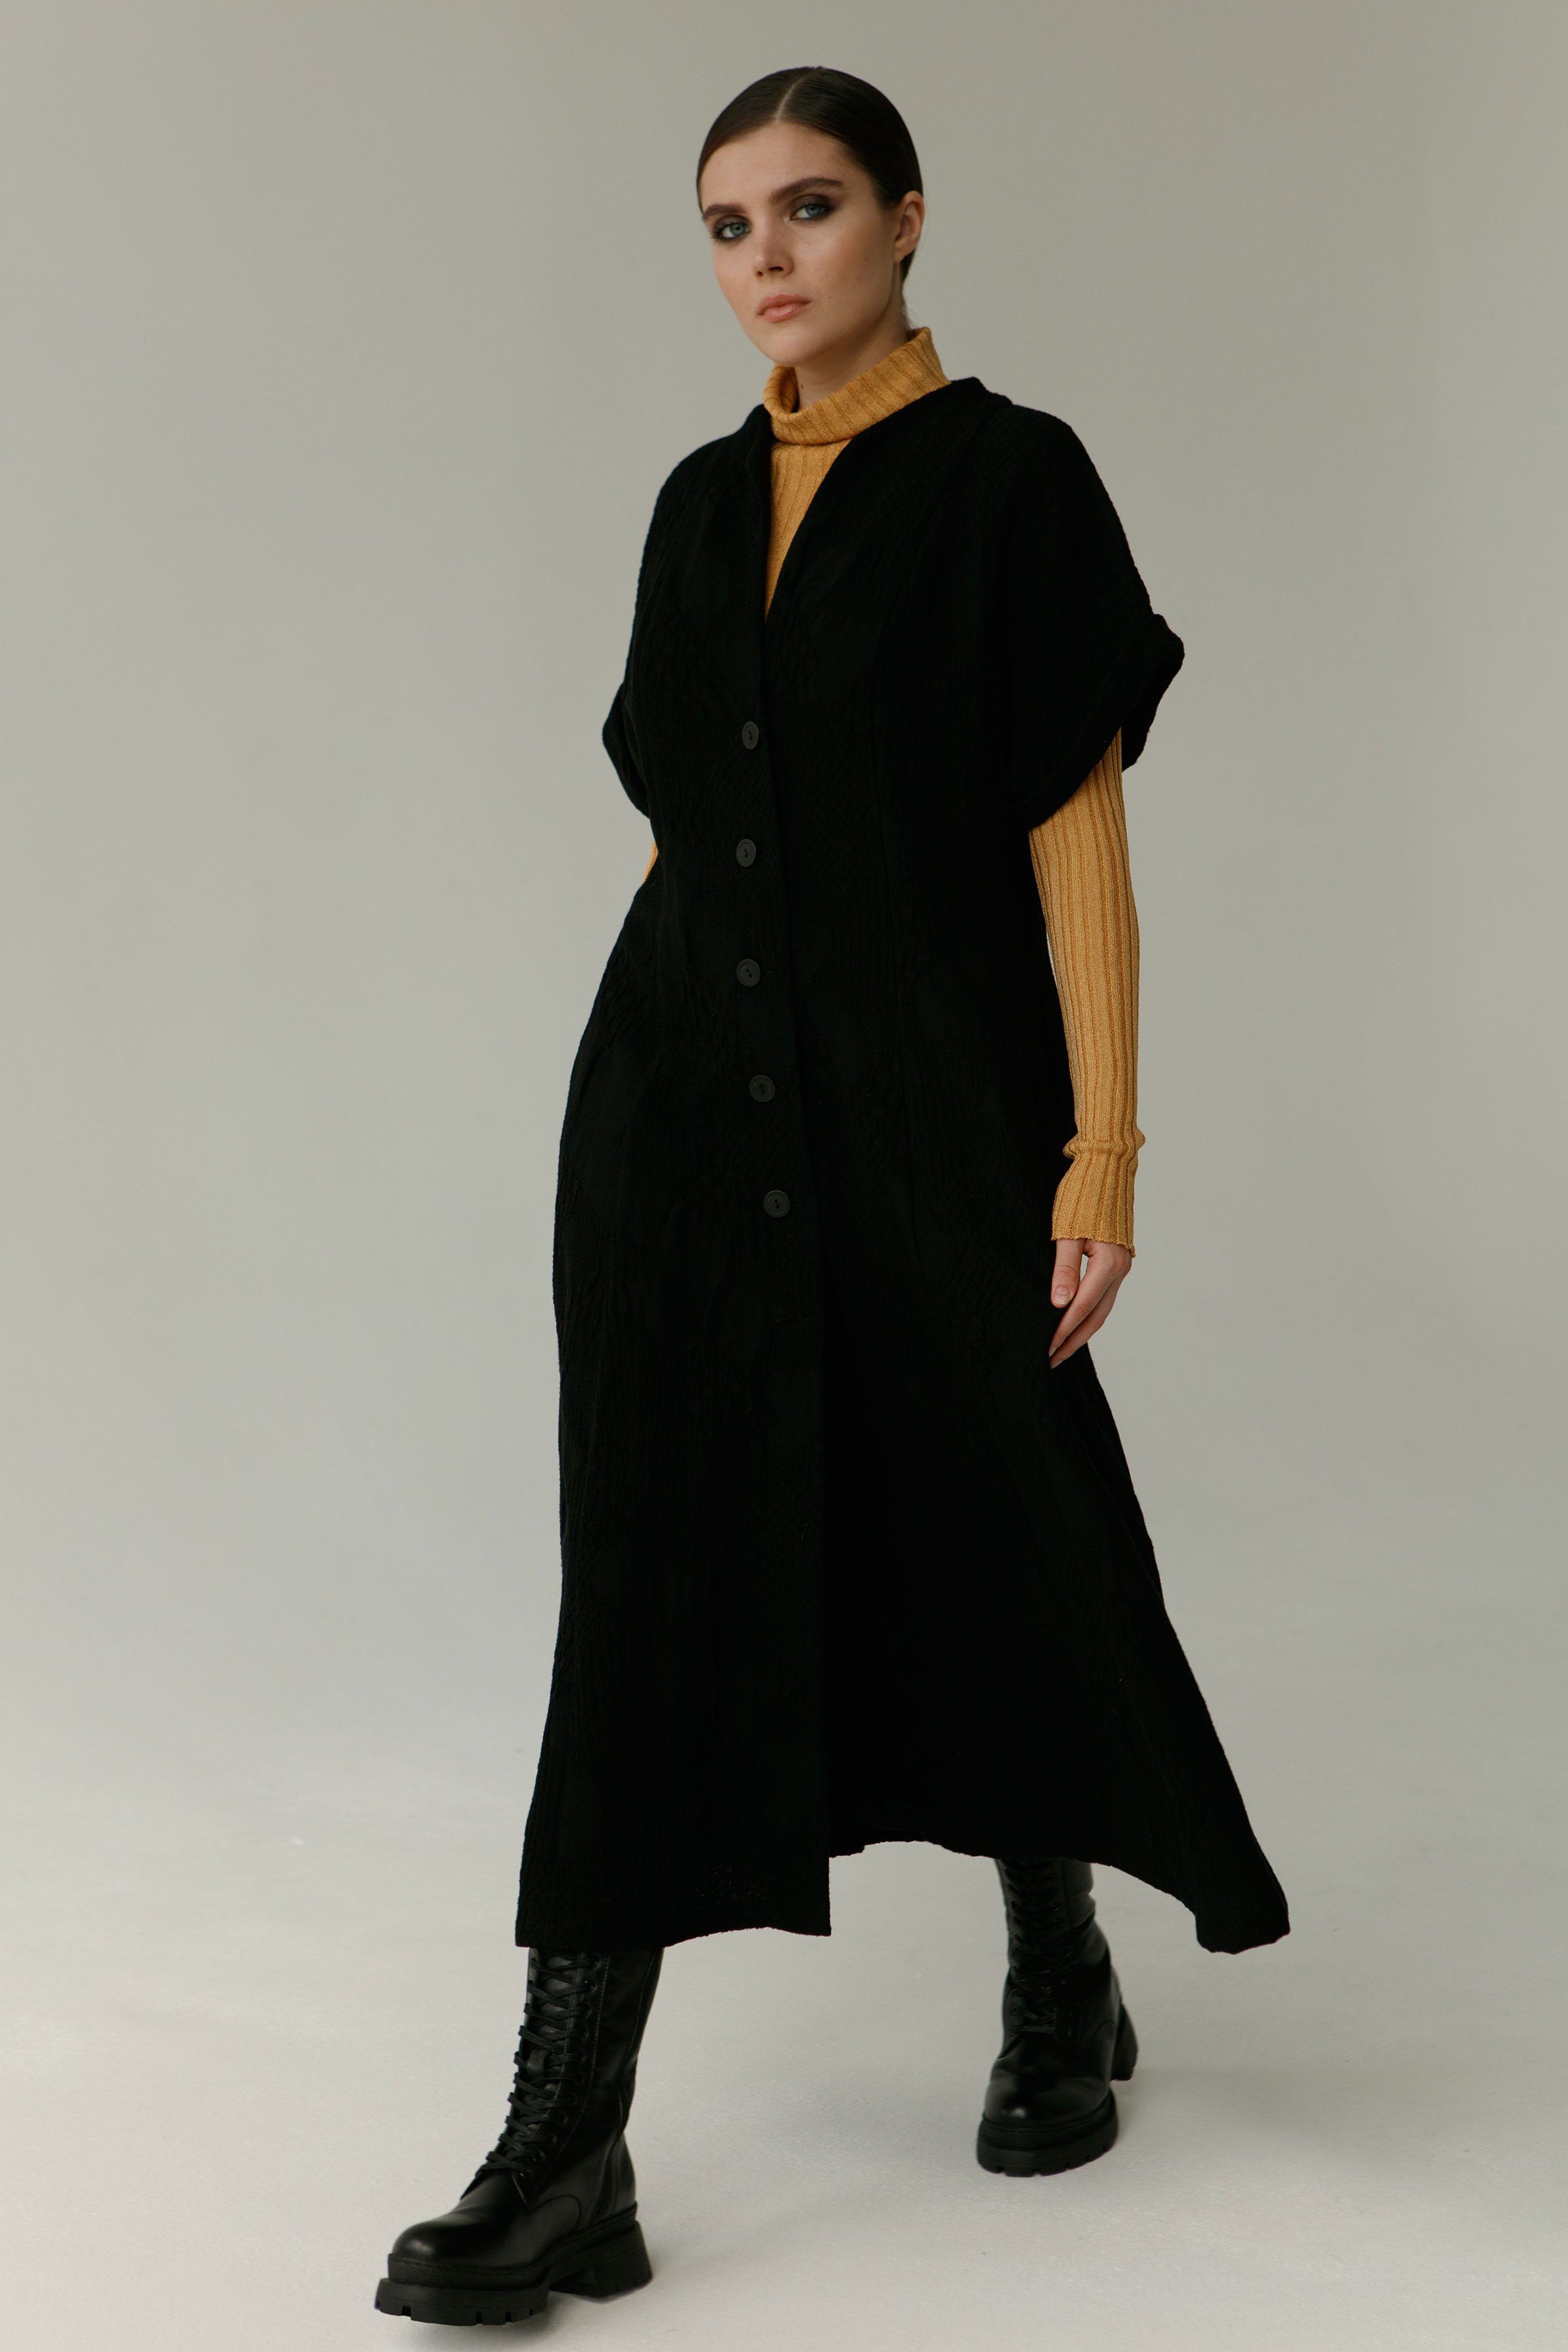 Платье Жаккард на пуговицах 00 Черный (noir) от Lesel (Лесель)! Заказывайте по ✆ 8 (800) 777 02 37